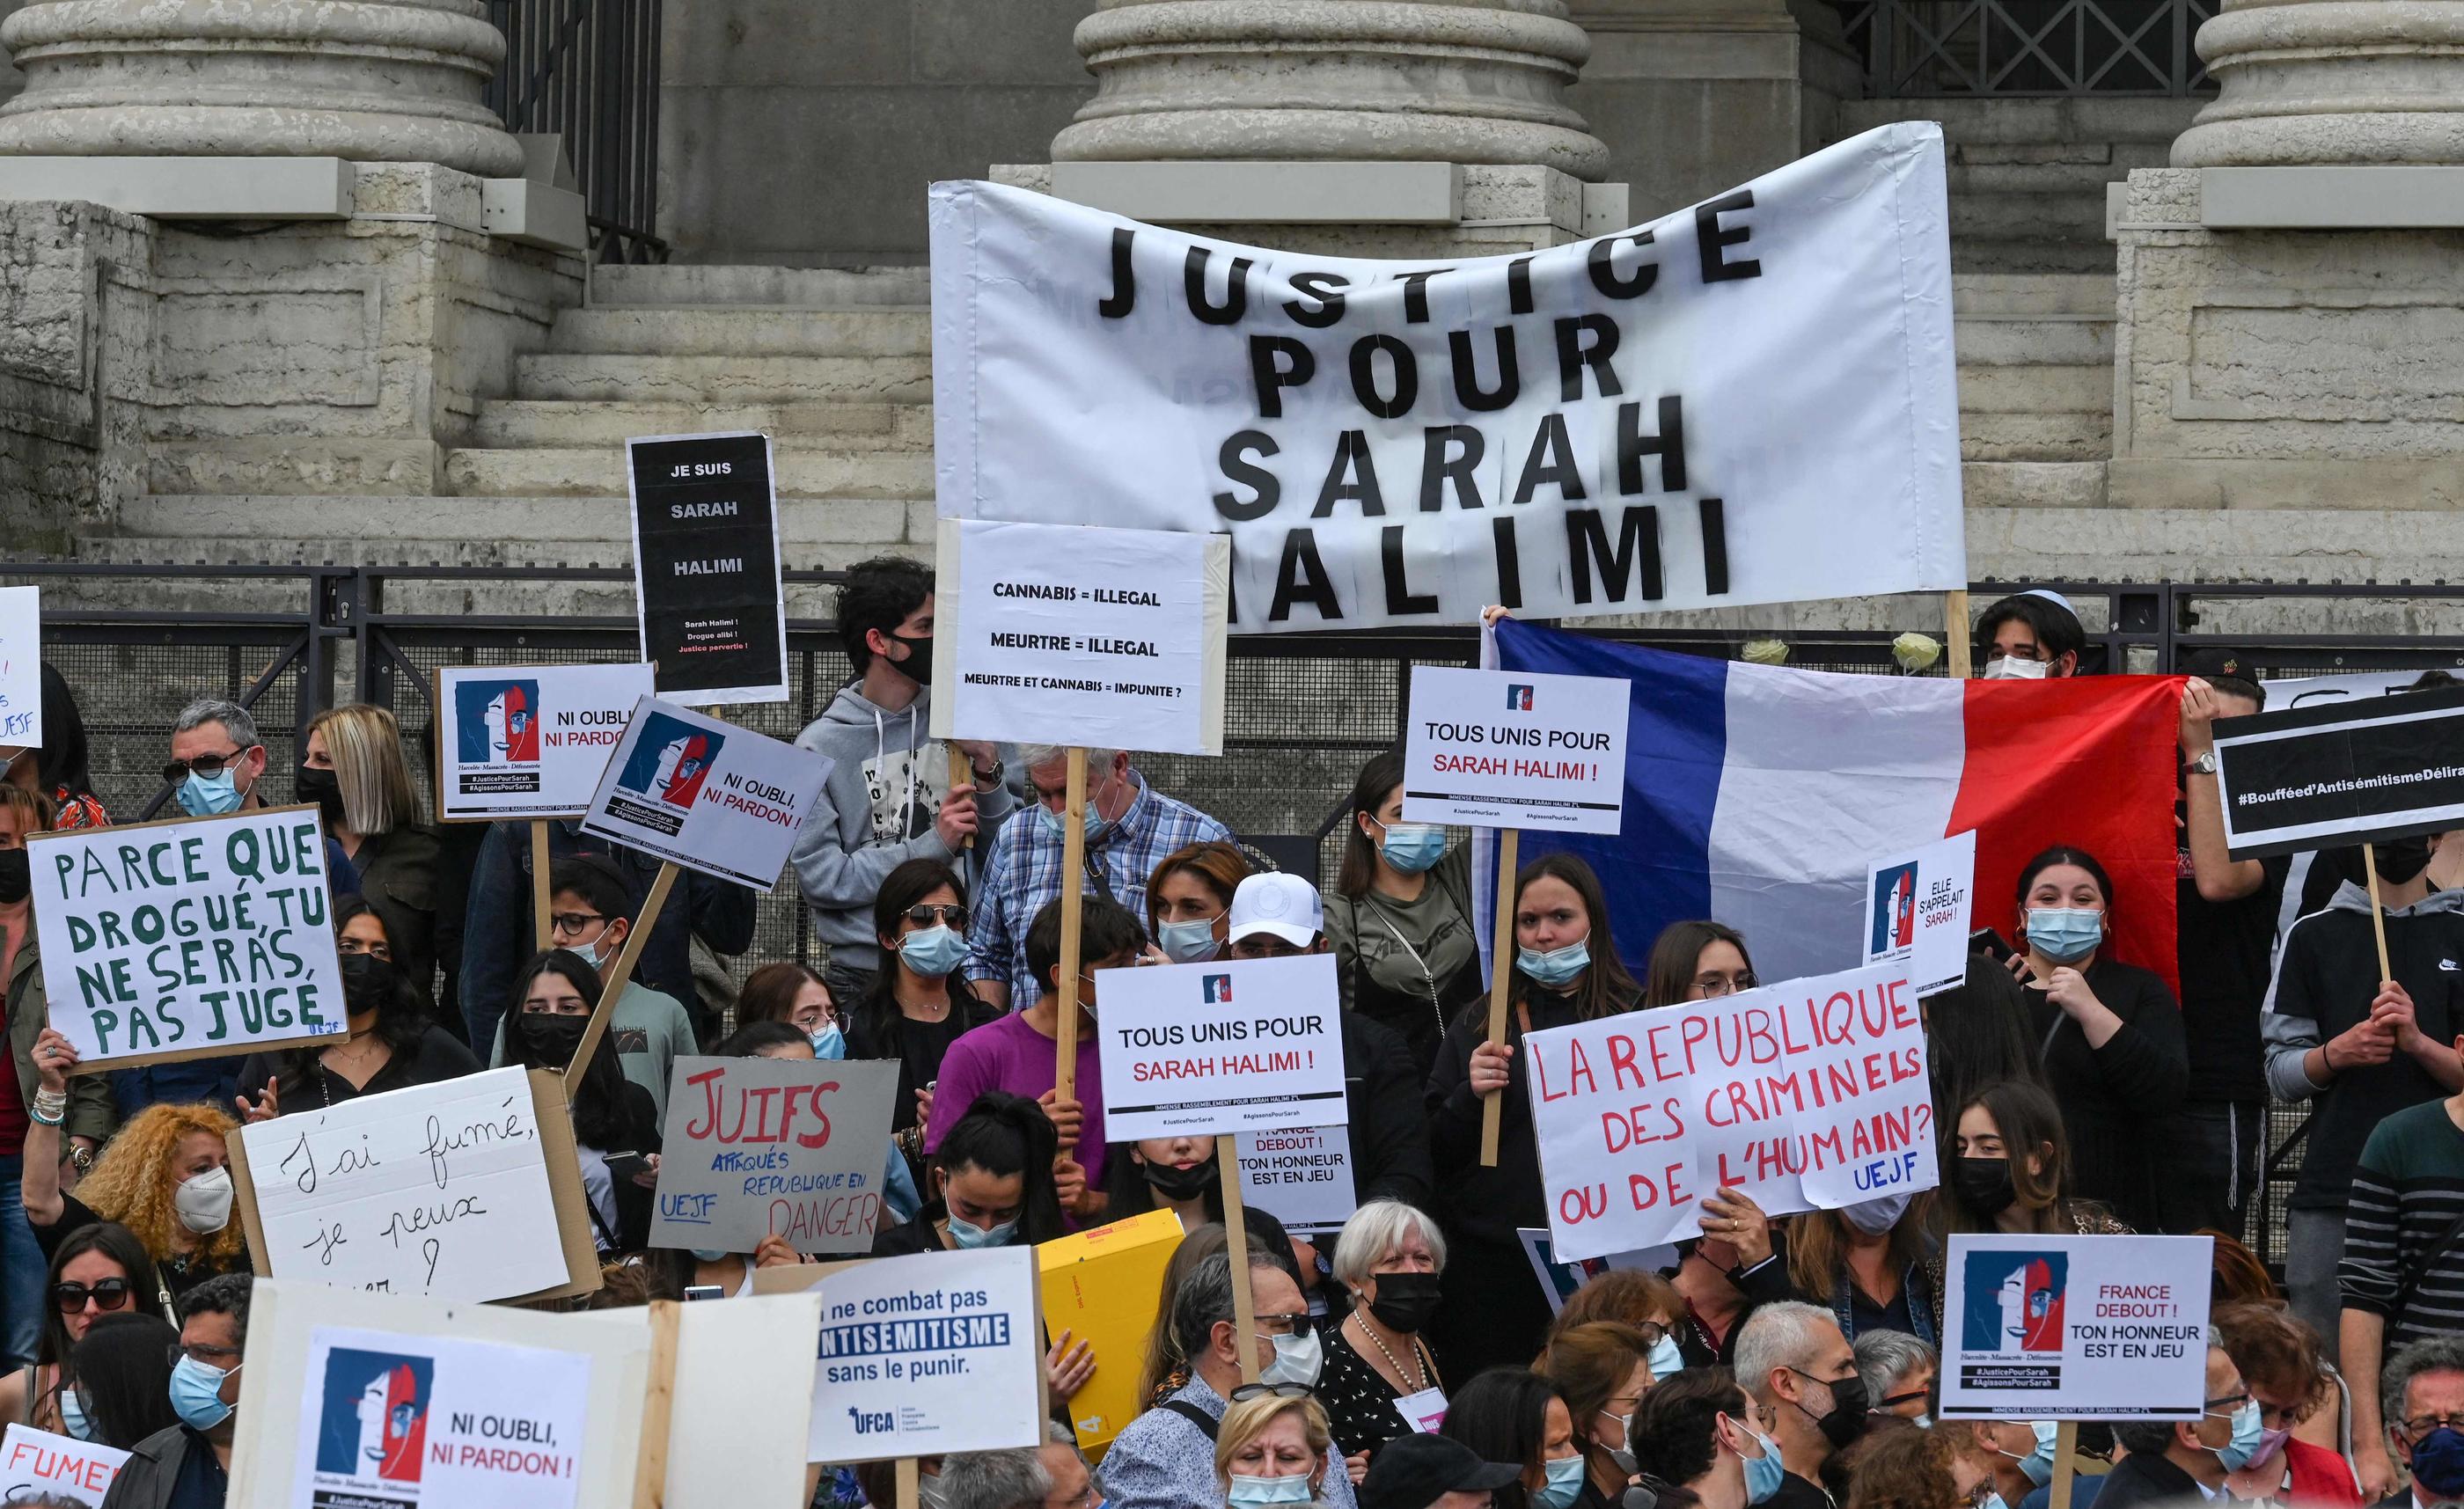 Lyon, le 25 avril 2021. Des manifestants réclament "Justice pour Sarah Halimi", tuée en 2017. AFP/Philippe Desmazes